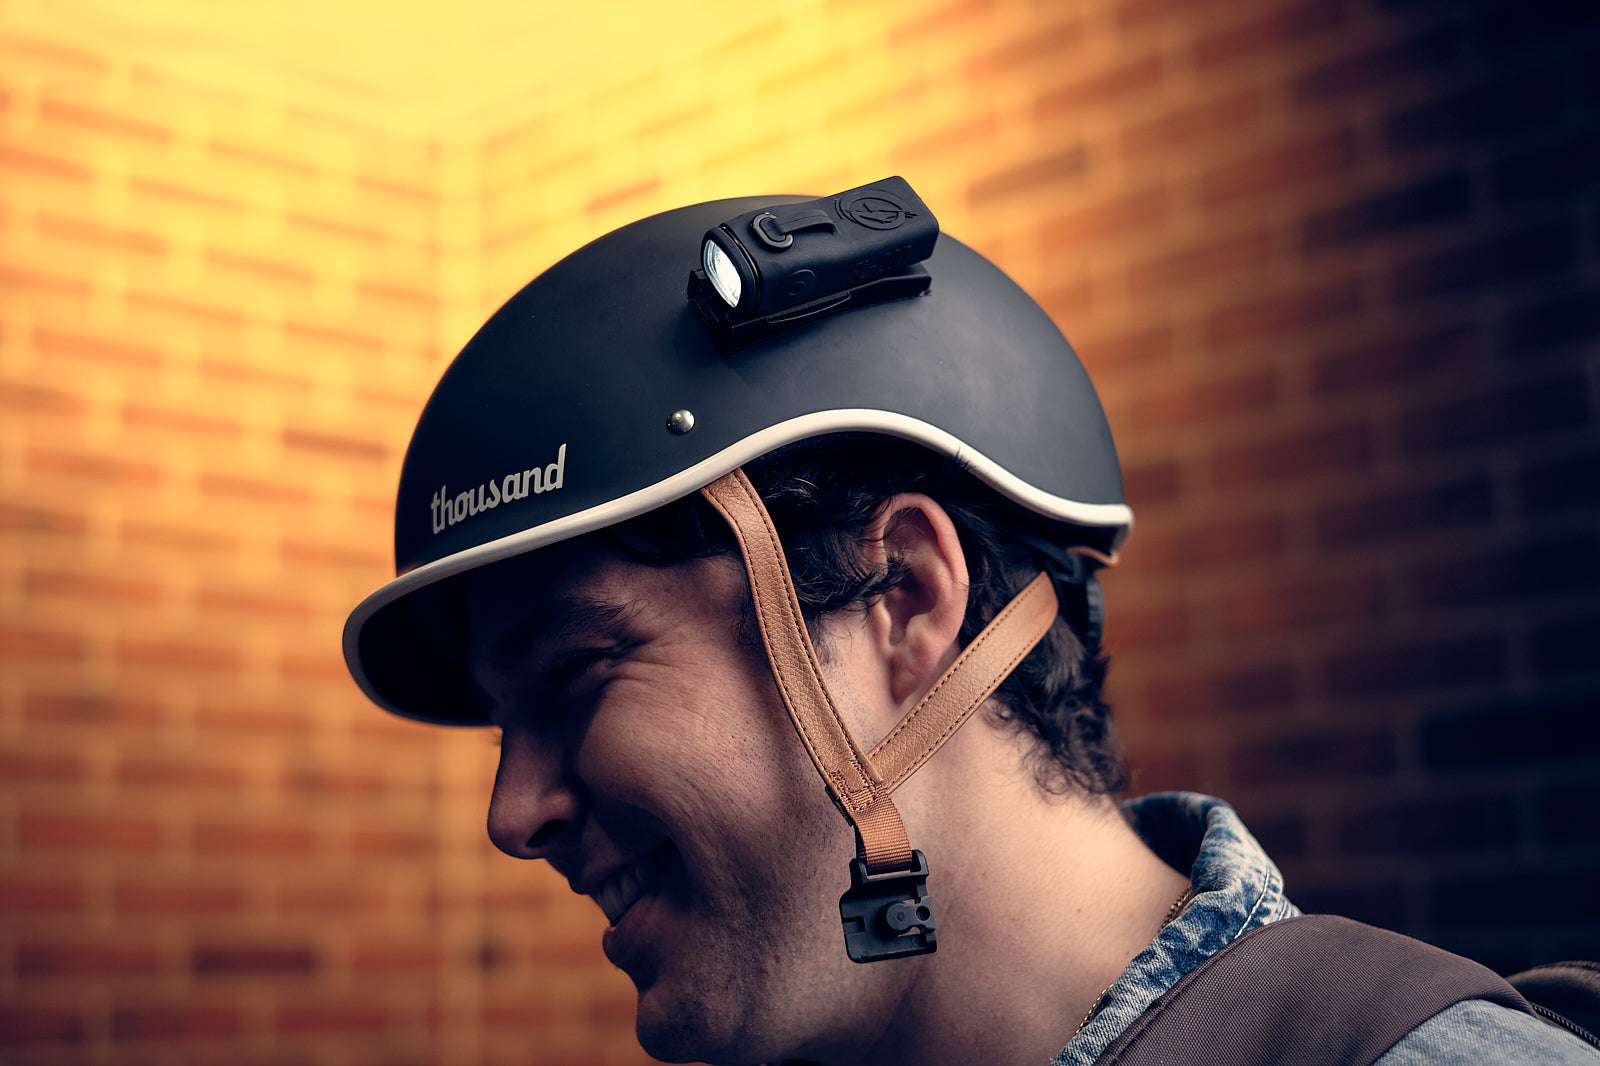 rechargeable helmet light